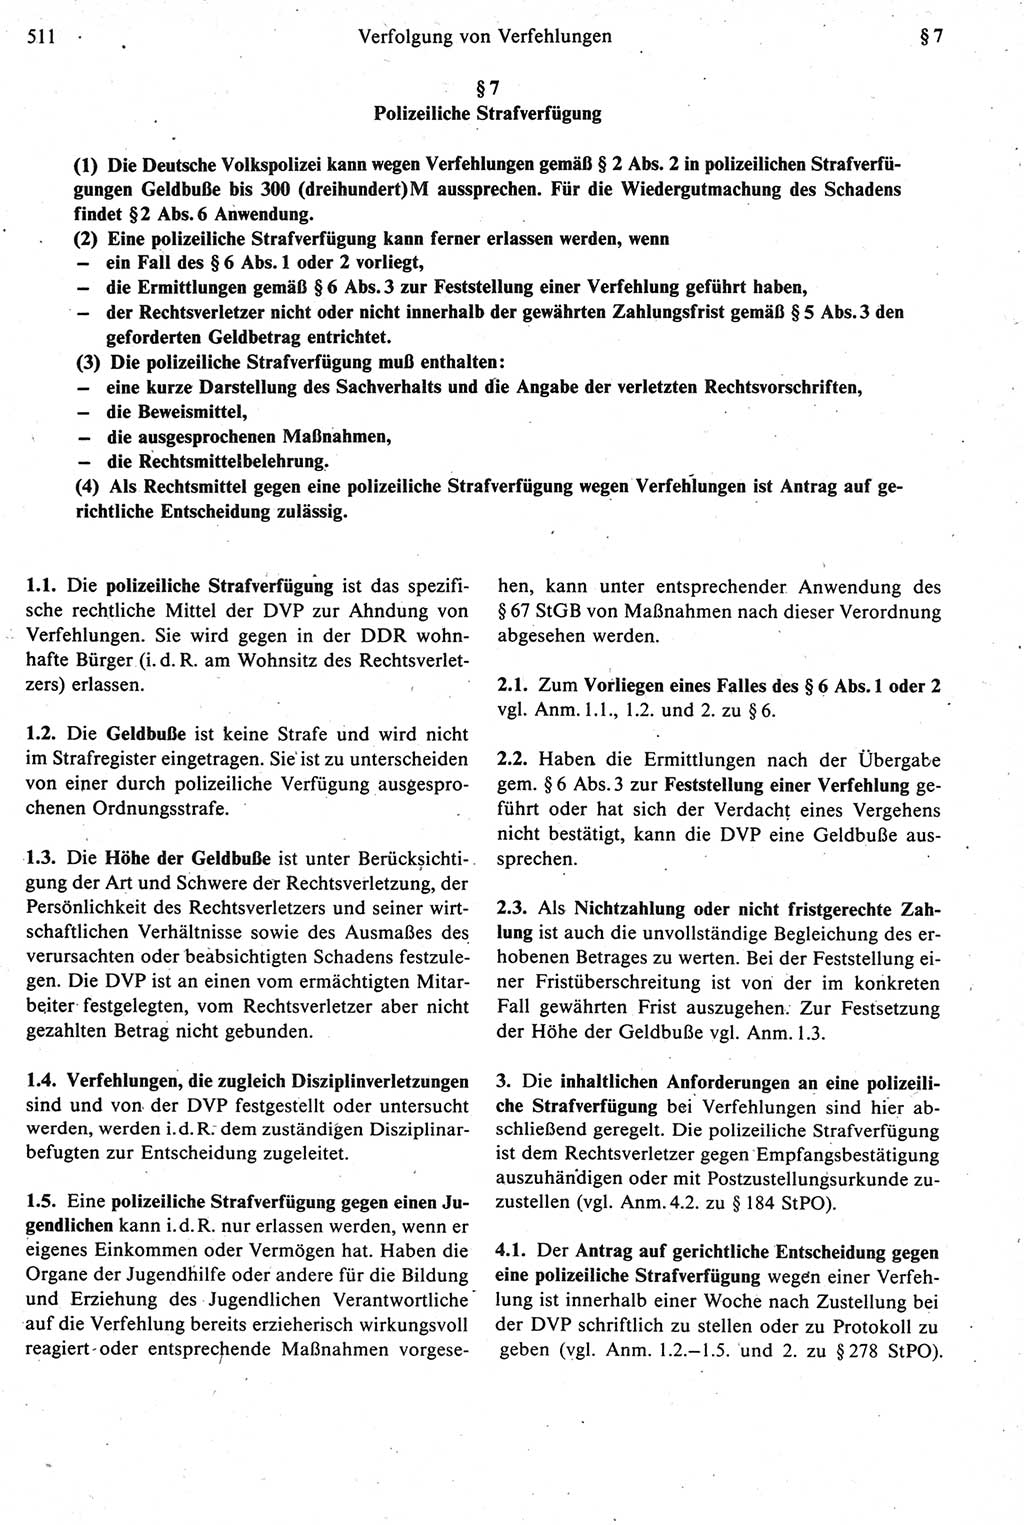 Strafprozeßrecht der DDR [Deutsche Demokratische Republik], Kommentar zur Strafprozeßordnung (StPO) 1987, Seite 511 (Strafprozeßr. DDR Komm. StPO 1987, S. 511)